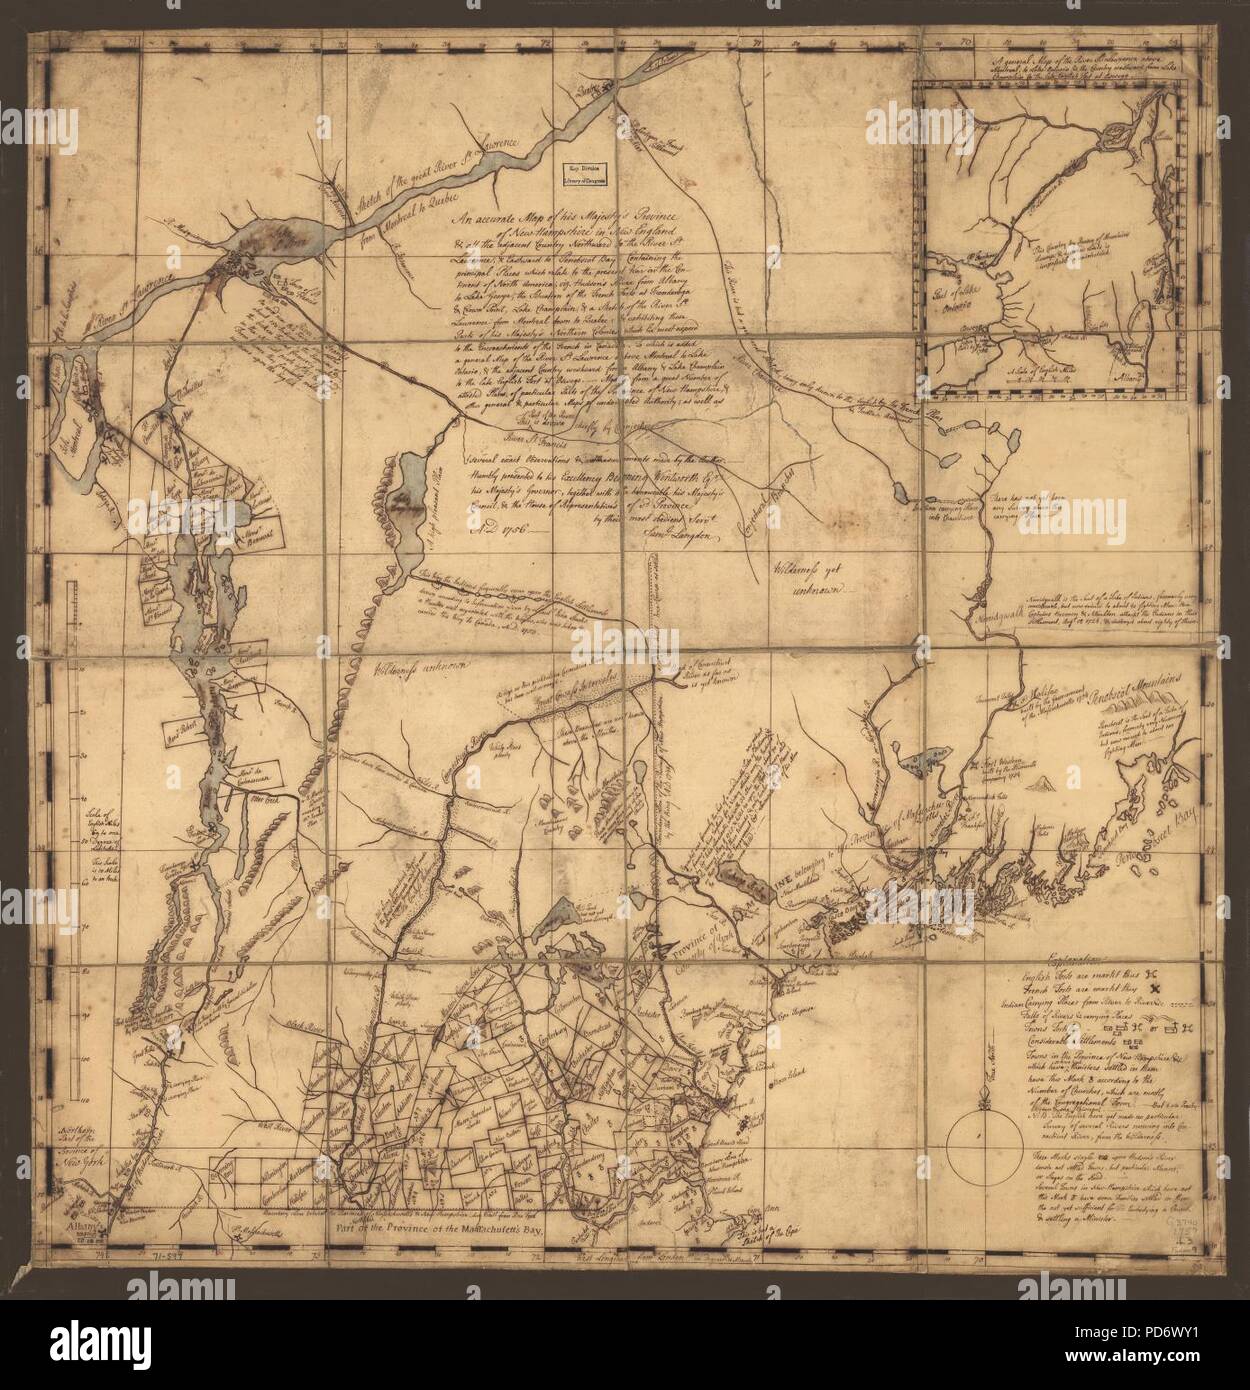 Un mapa exacto de Su Majestad la provincia de New-Hampshire en Nueva Inglaterra y todo el país adyacente al norte del río San Lorenzo, y hacia el este a Penobscot Bay, que contiene los principales lugares Foto de stock